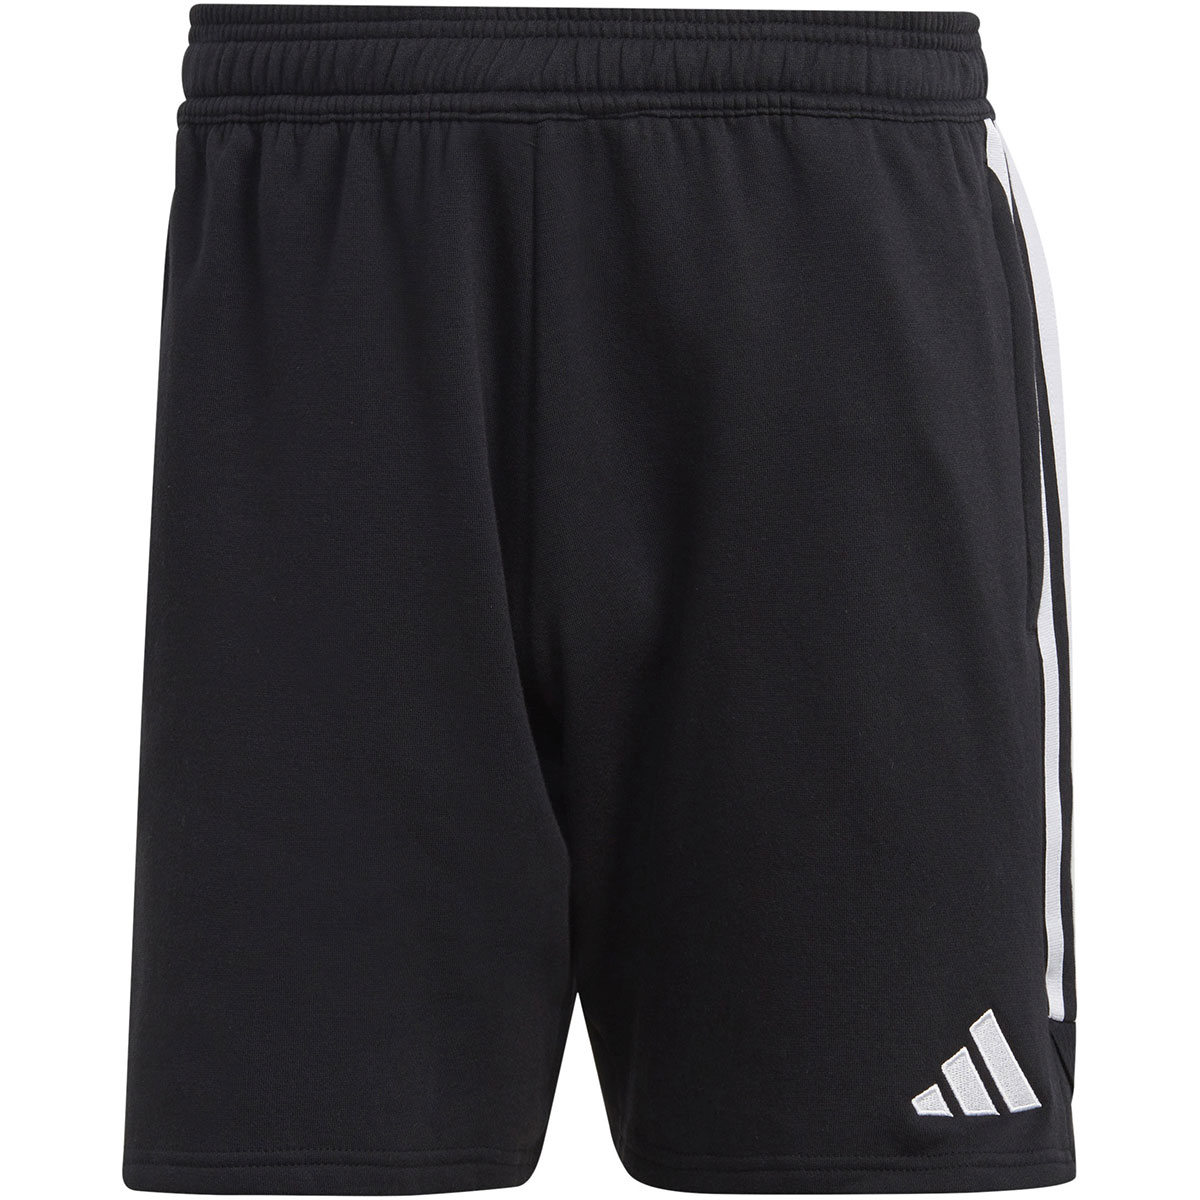 Adidas Herren Sweat Shorts Tiro 23 schwarz